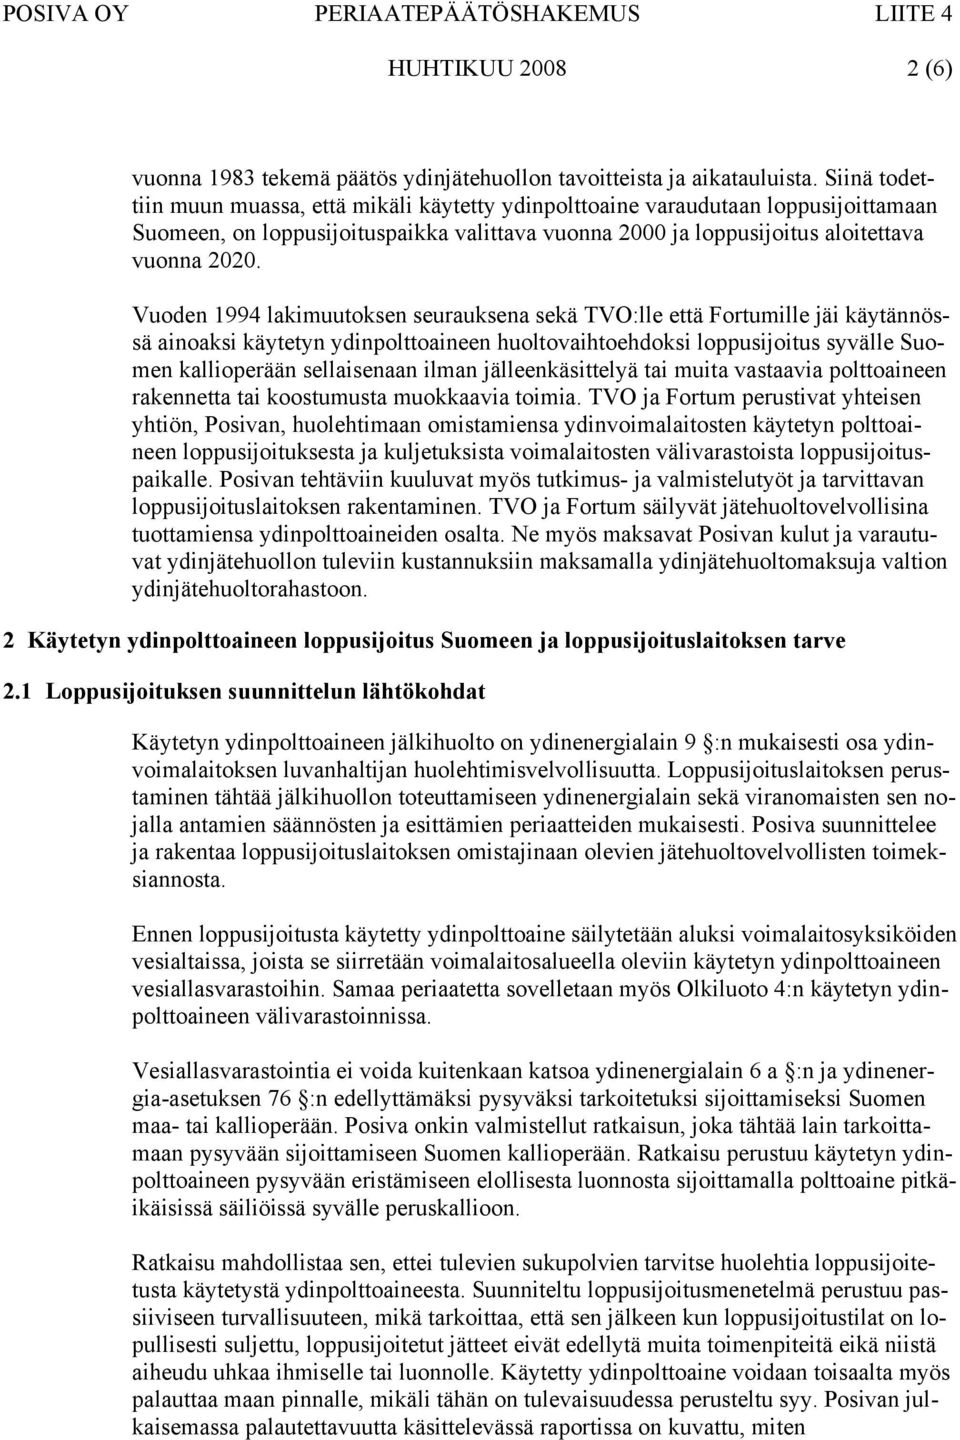 Vuoden 1994 lakimuutoksen seurauksena sekä TVO:lle että Fortumille jäi käytännössä ainoaksi käytetyn ydinpolttoaineen huoltovaihtoehdoksi loppusijoitus syvälle Suomen kallioperään sellaisenaan ilman